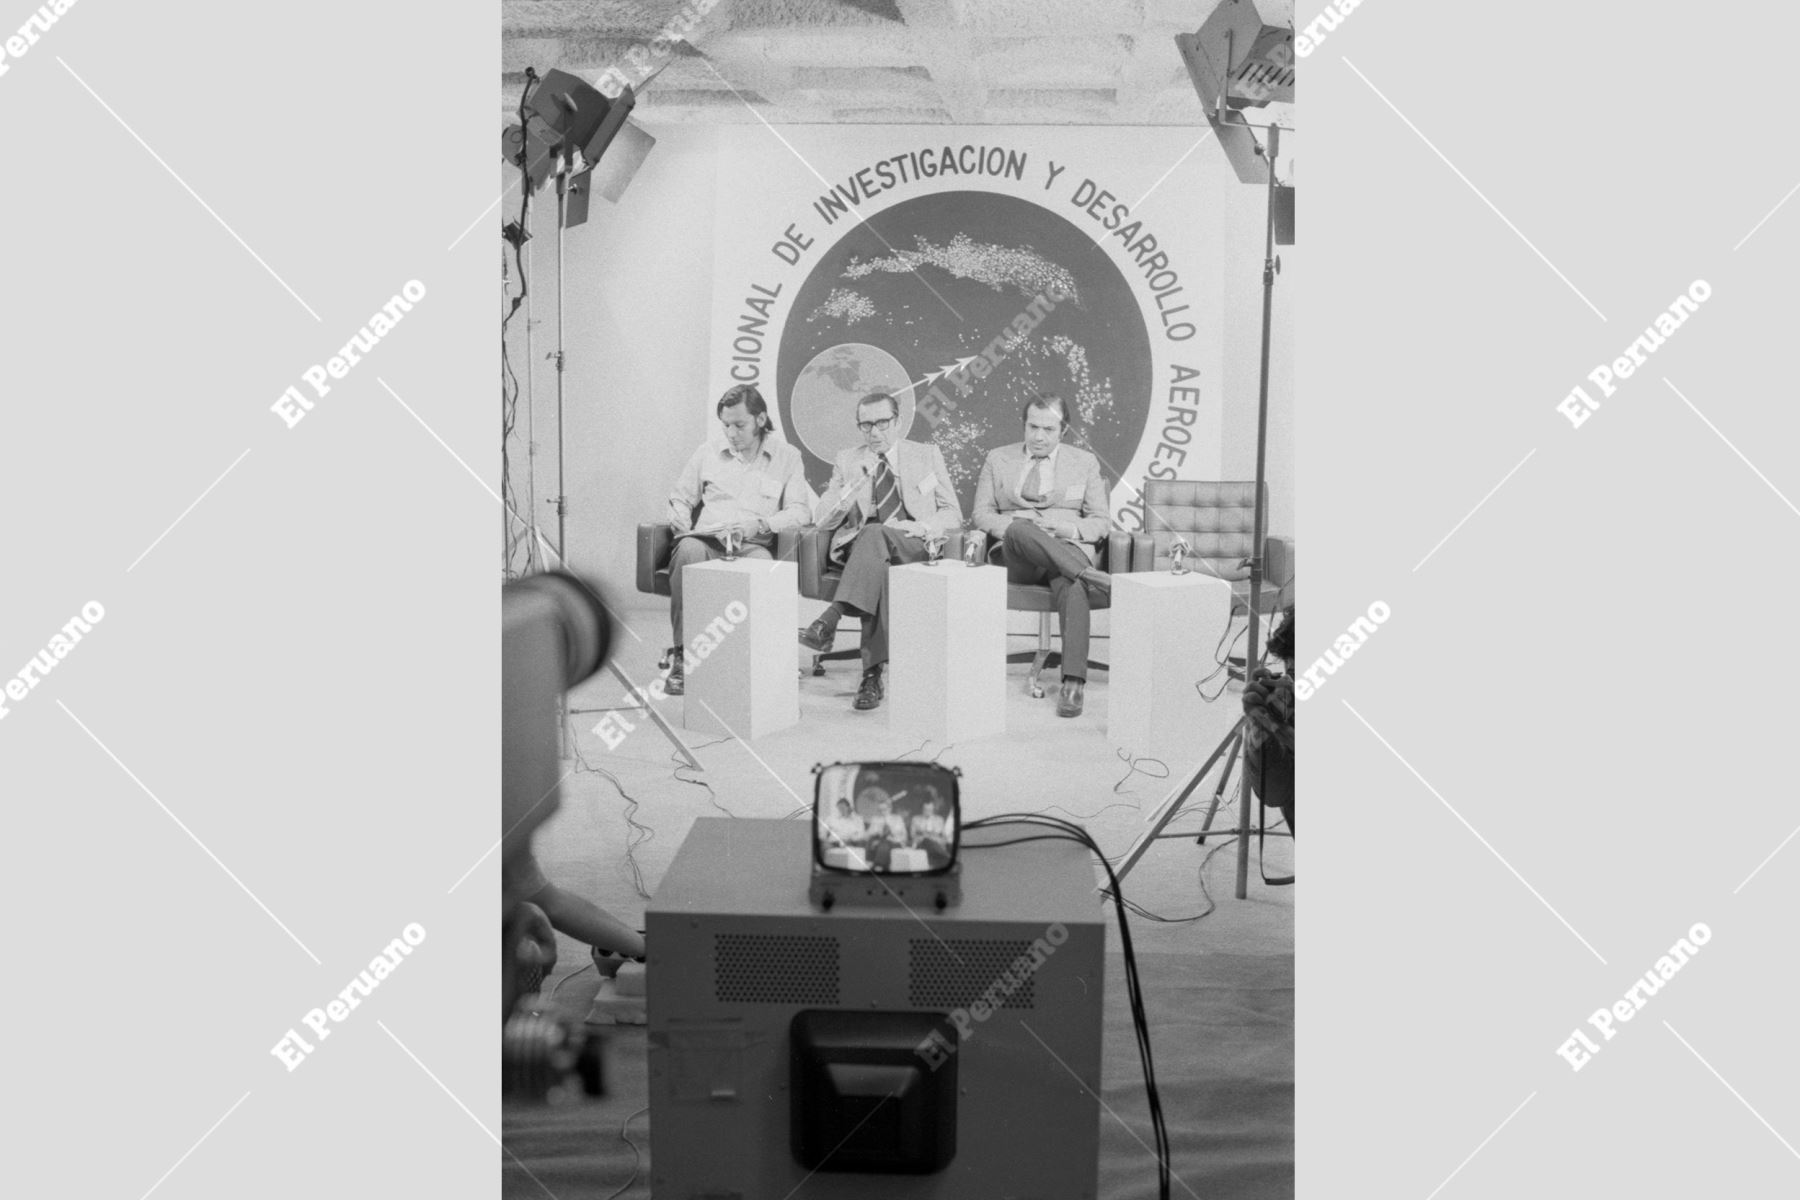 Lima - 22 octubre 1976/ Periodistas peruanos y técnicos del Centro Espacial Goddard en Washington, Estados Unidos, sostienen un diálogo directo que fue transmitido vía satélite por primera vez desde el Perú en televisión a colores. Fue durante el ensayo del Satélite ATS-6 que se realizó la Comisión Nacional de investigación y Desarrollo Aero – CONIDA, desde el auditorio de Petroperú.Foto: Archivo Histórico El Peruano